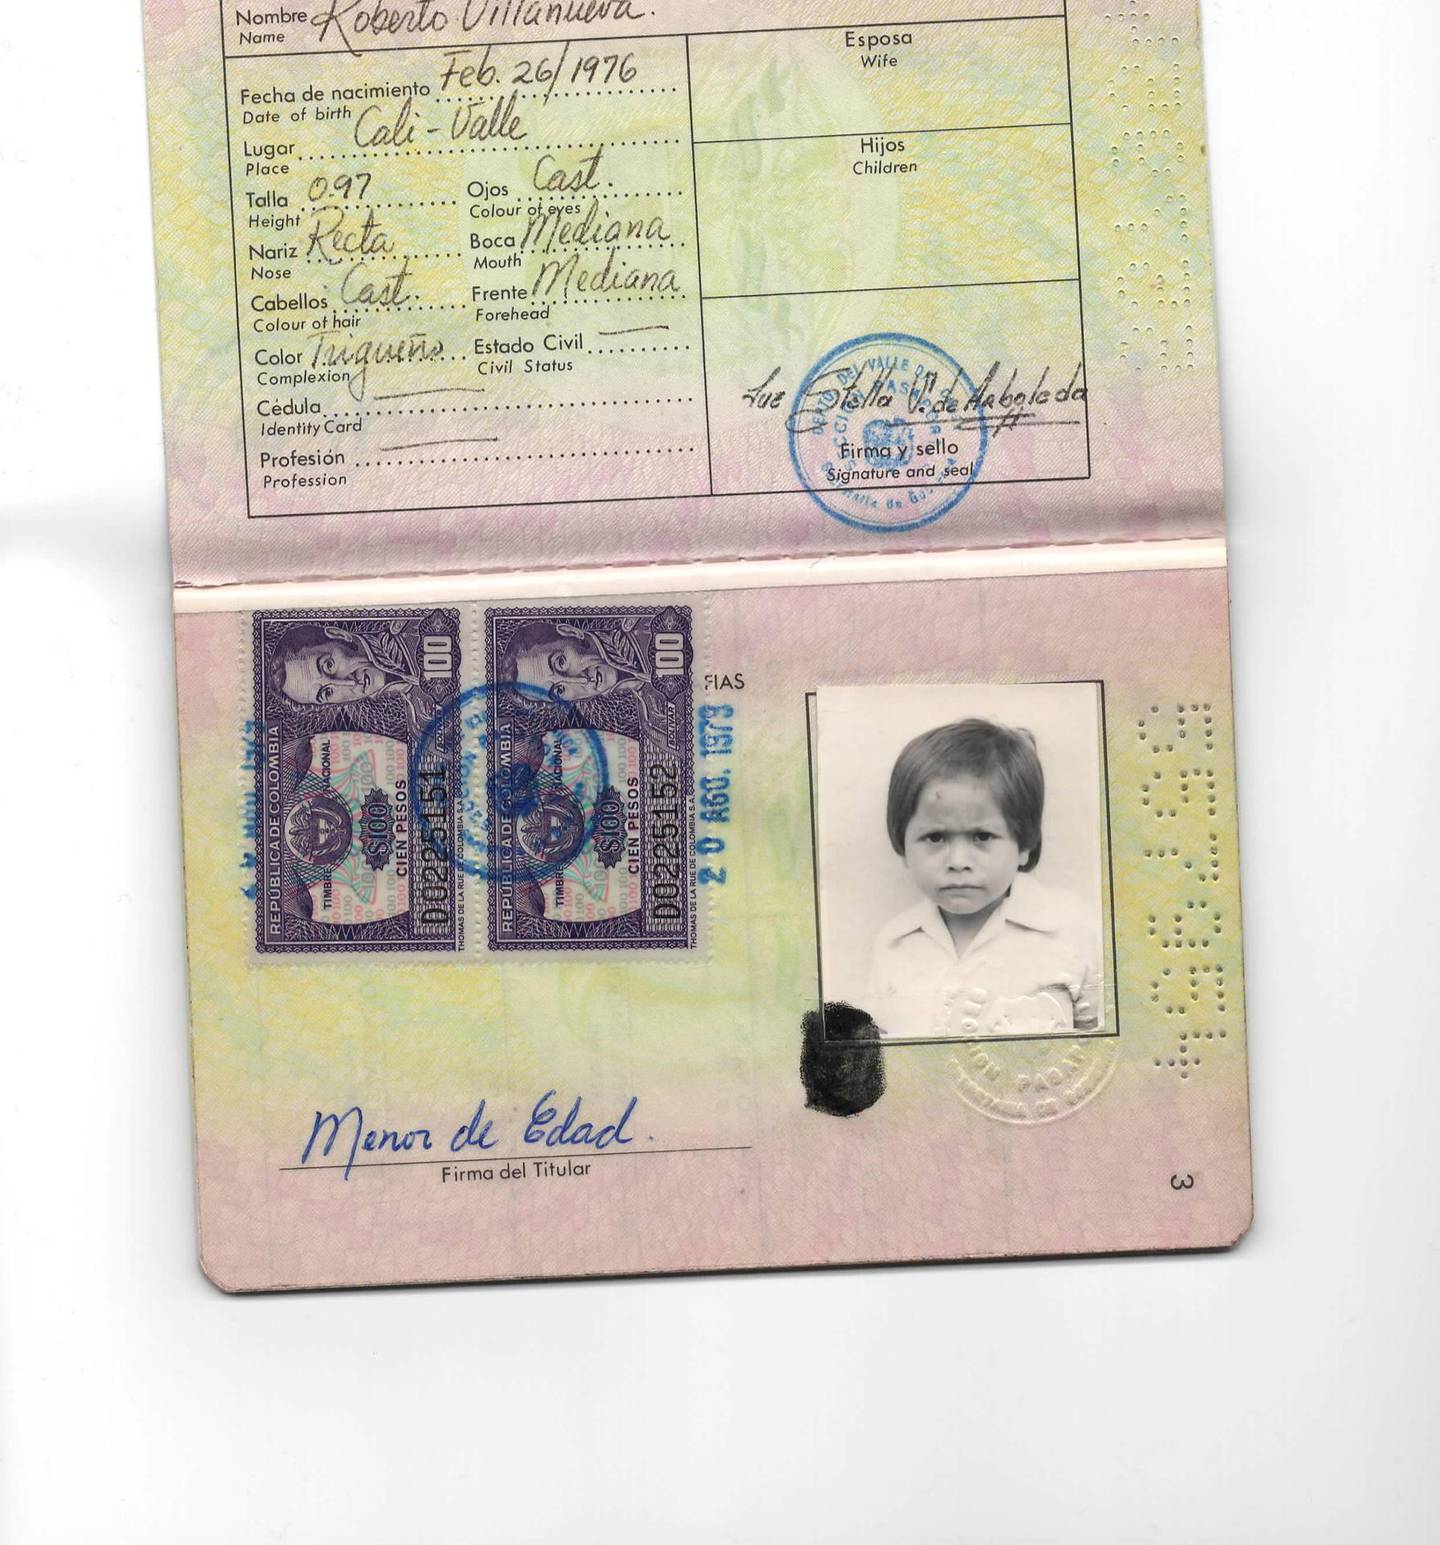 Robertos falske pass. Det står at han er født i 1976, men egentlig var han født i 1974.